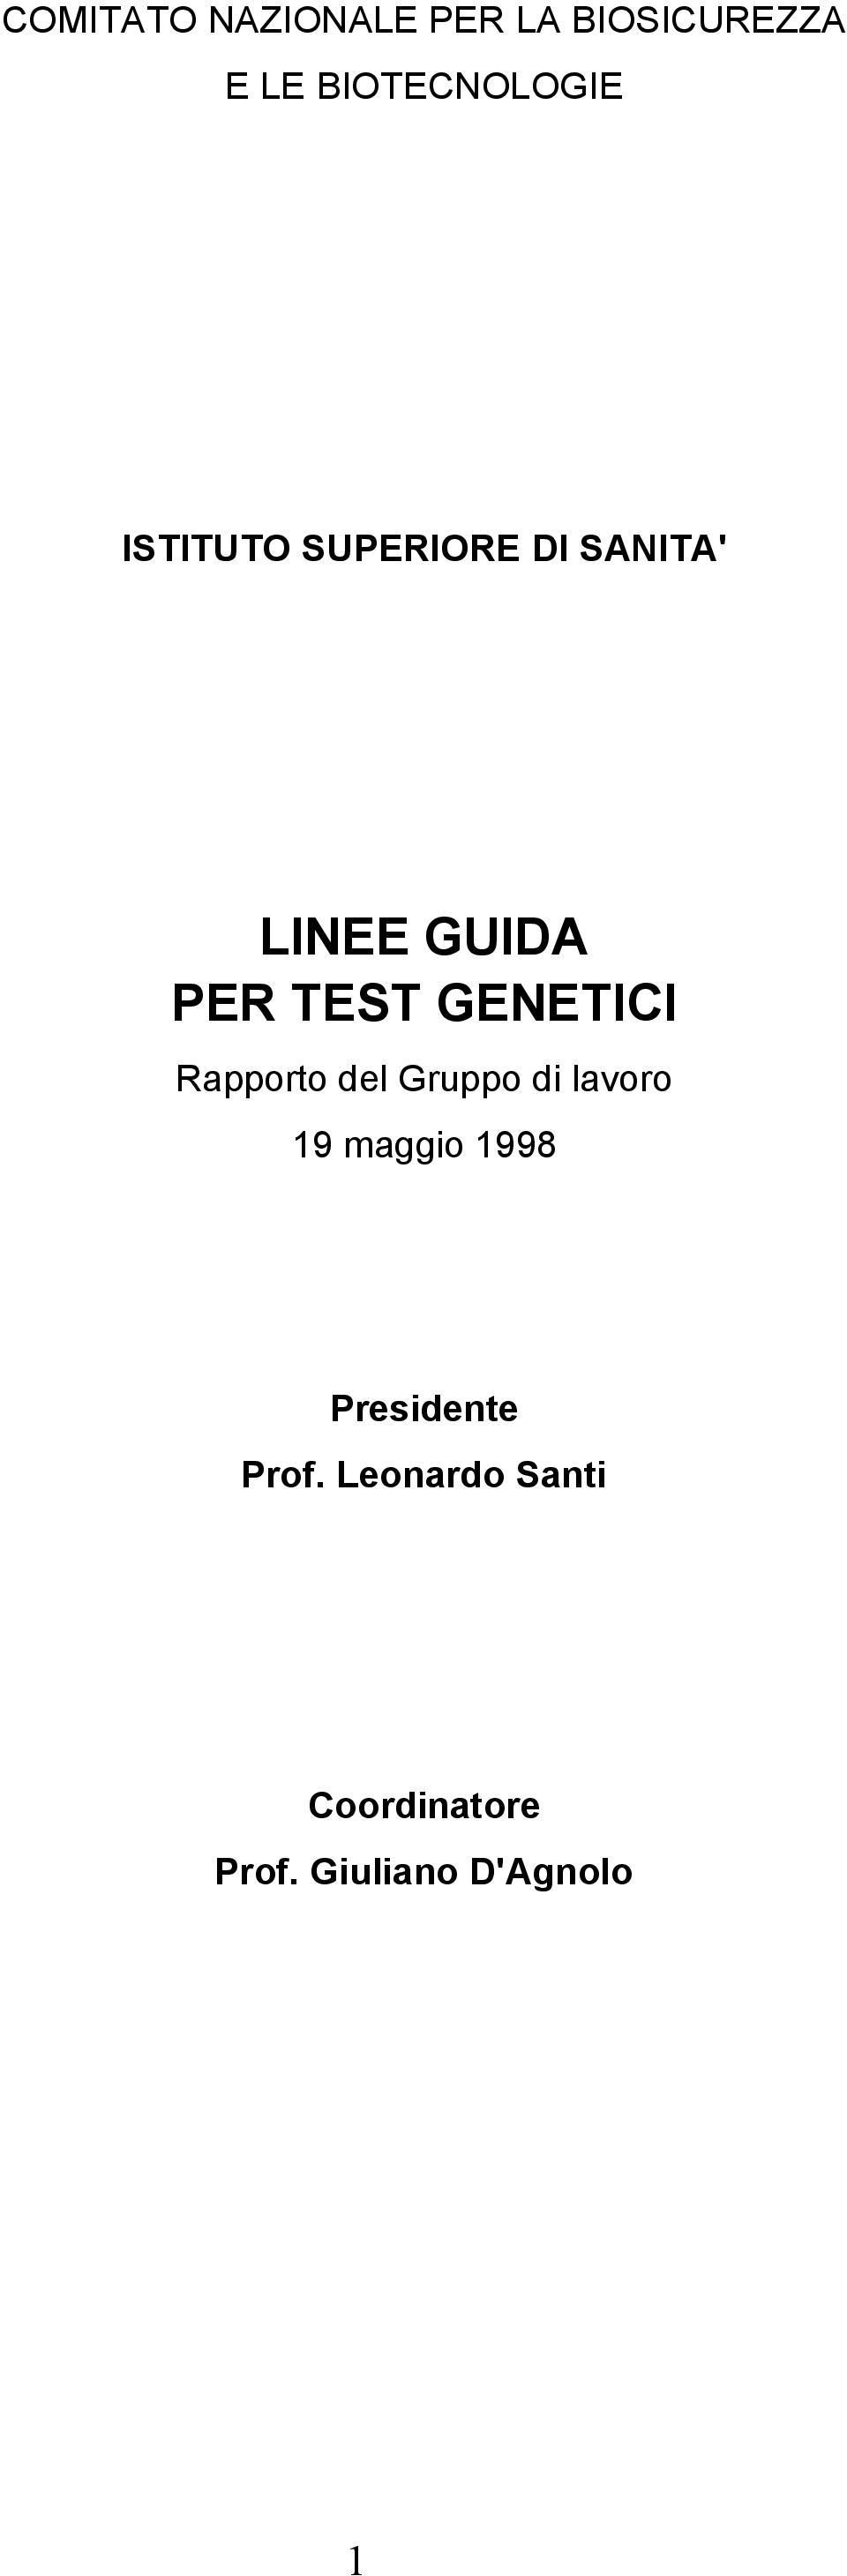 GENETICI Rapporto del Gruppo di lavoro 19 maggio 1998